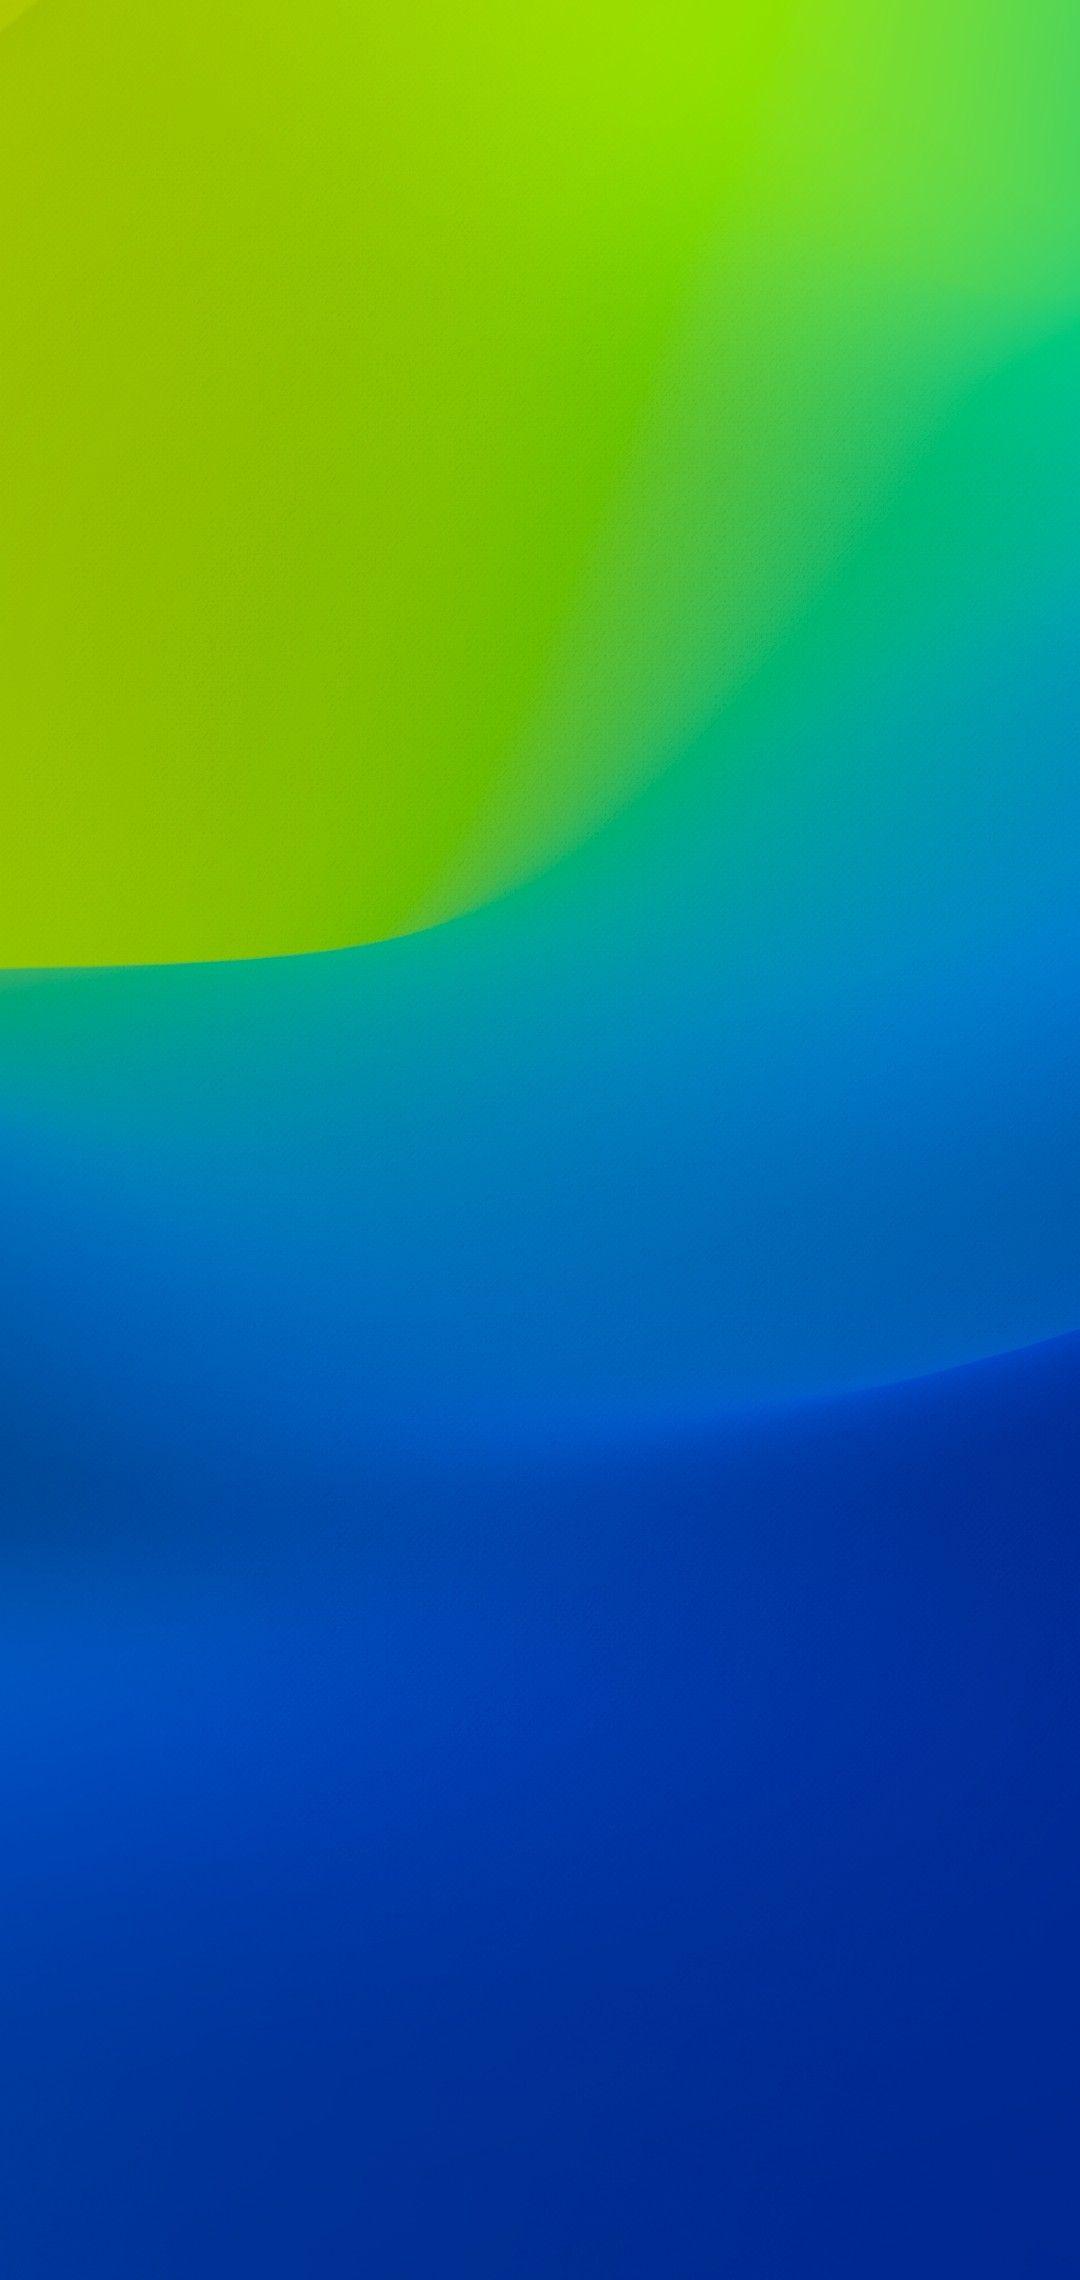 1080x2280 iOS 12, iPhone X, xanh lam, xanh lục, sạch sẽ, đơn giản, trừu tượng